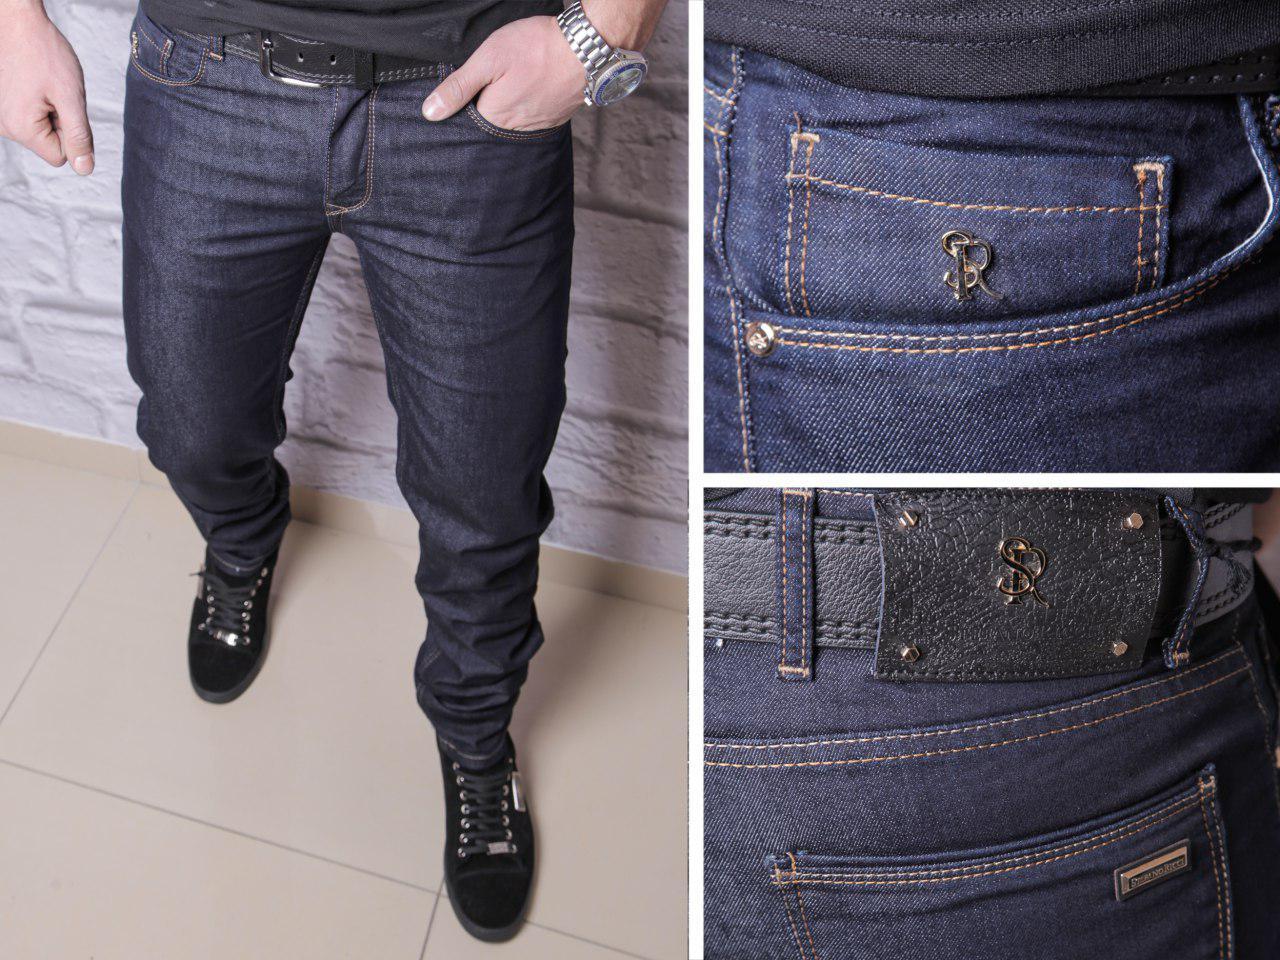 

Мужские джинсы Armani 2019 Прекрасное лекало и посадка оригинал Идут в комплекте с ремнем Есть большие размеры